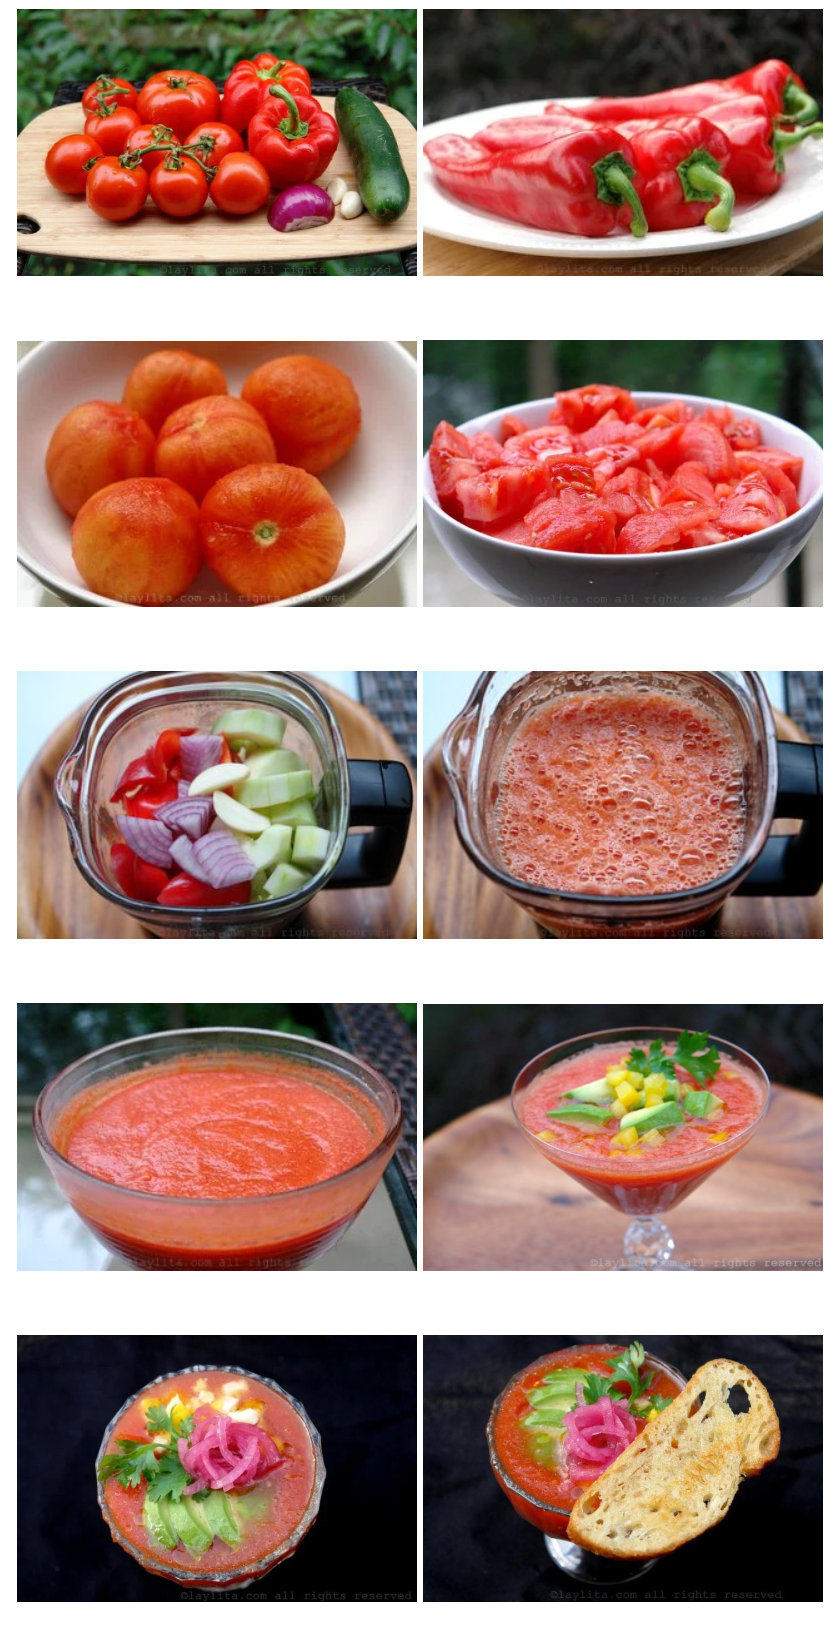 Preparacion del gazpacho o sopa fria de tomate